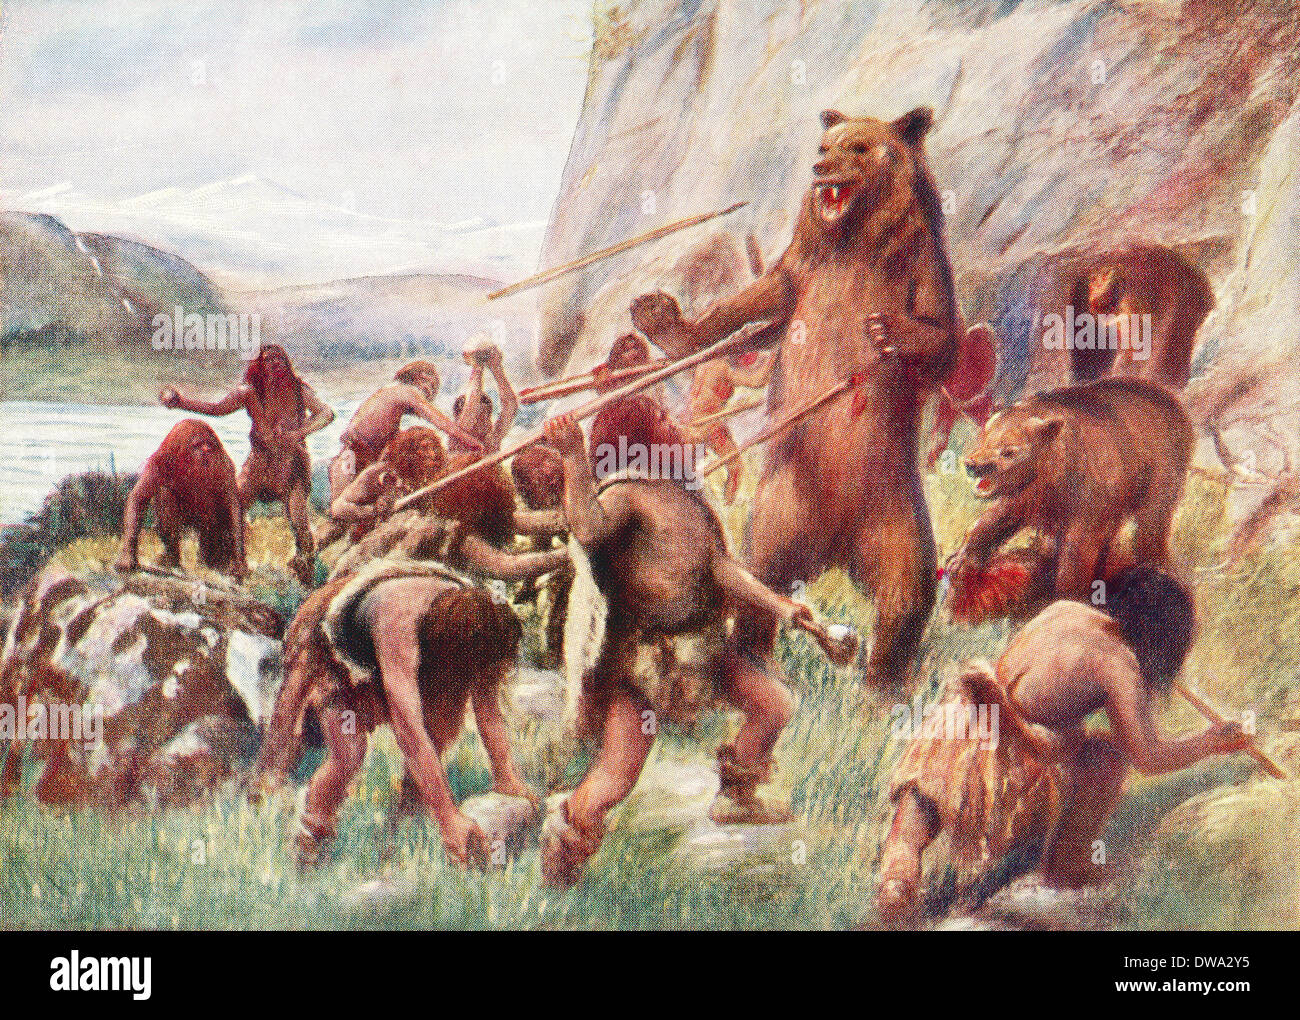 Steinzeit Menschen jagen wilde Bären. Stockfoto